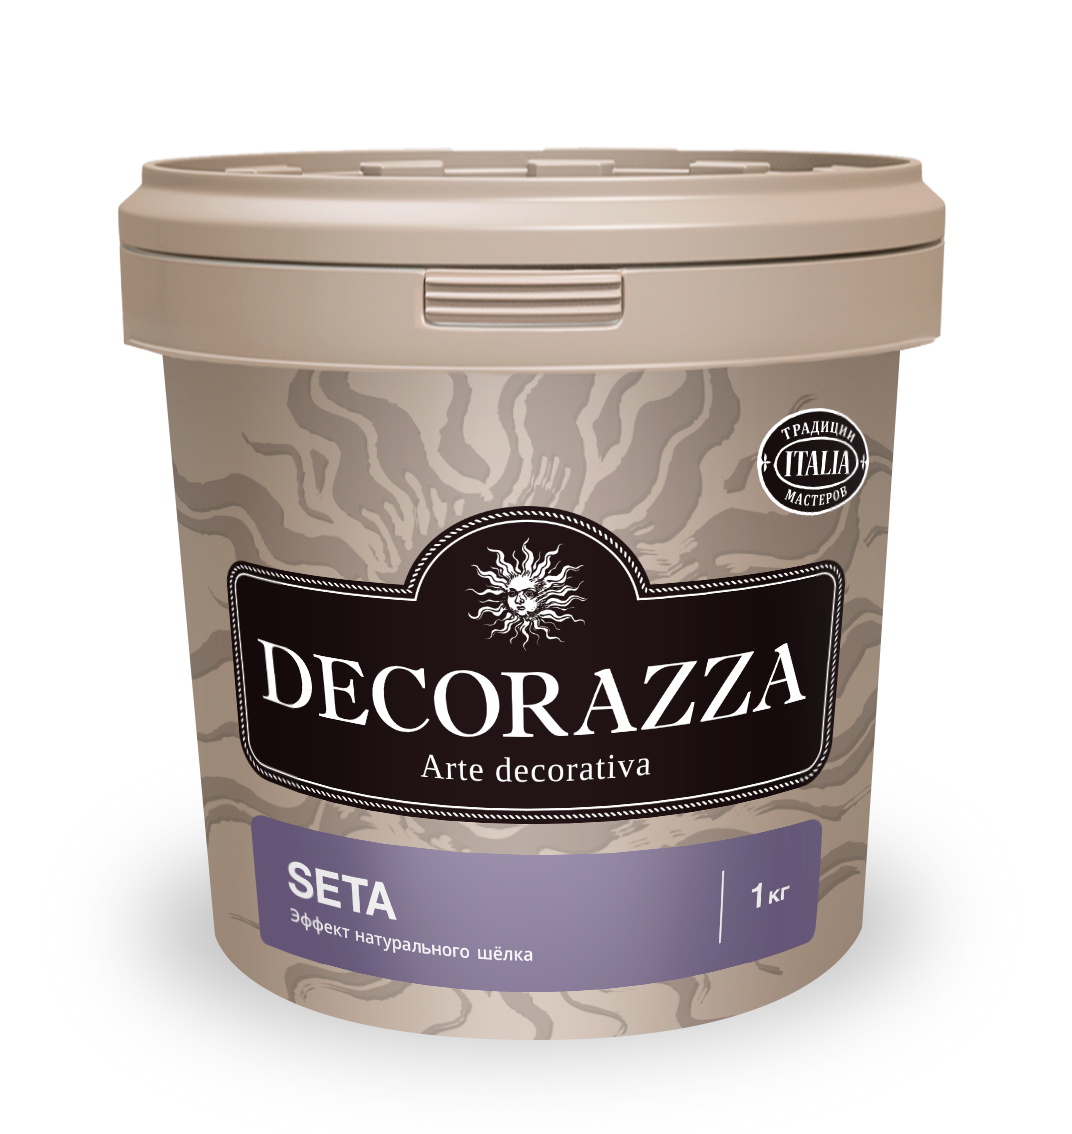 Декоративная штукатурка эффект натурального шелка Decorazza Seta, ST 800, золото, 1 кг краска декоративная decorazza alcantara 5 л 3 5 кг